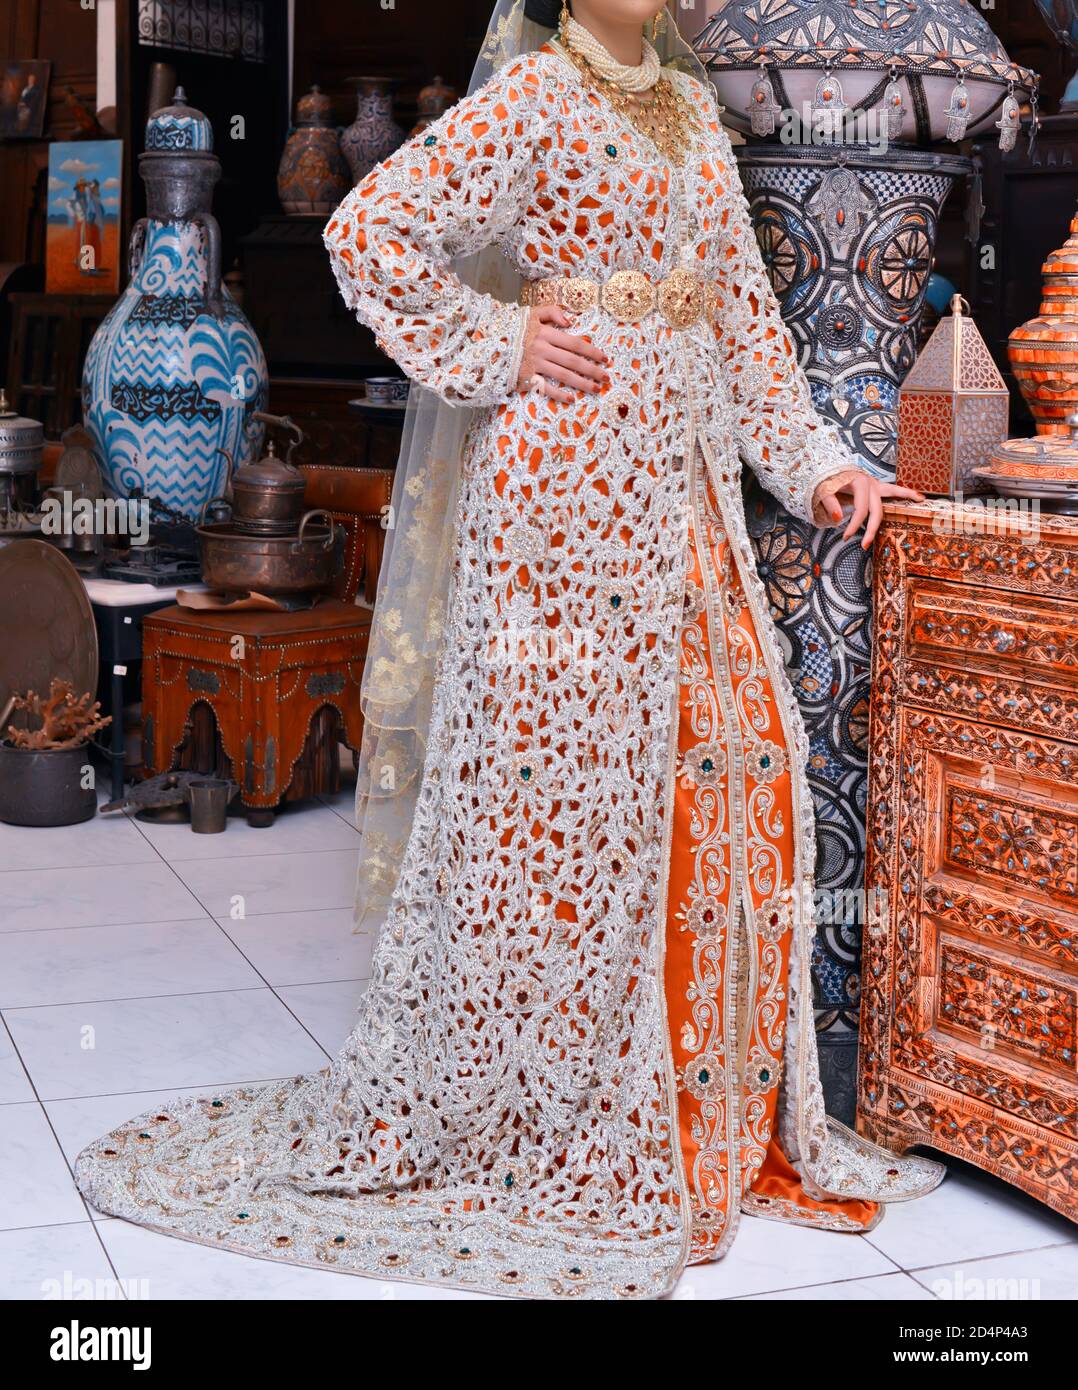 Der marokkanische Kaftan ist eine marokkanische Frauen traditionelle  Tracht. Es gilt als eine der ältesten traditionellen Kleidung der Welt  Stockfotografie - Alamy